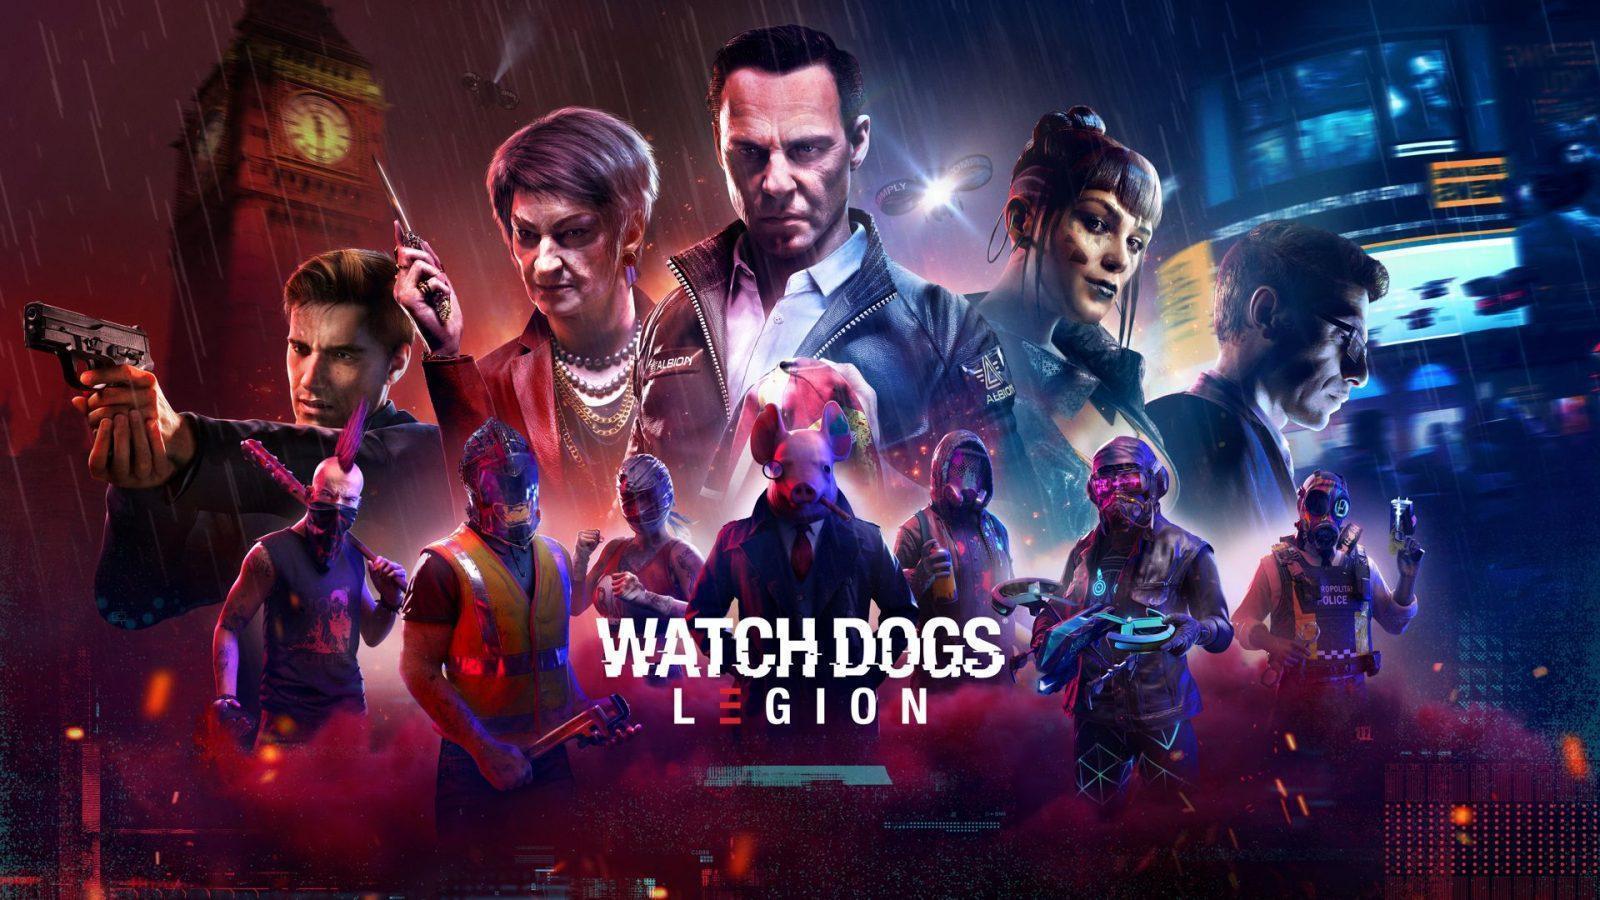 Durante o ùltimo Ubisoft Forward foi apresentado mais trailer de Watch Dogs: Legion, contendo várias novidades como a volta de Aiden Pearce.